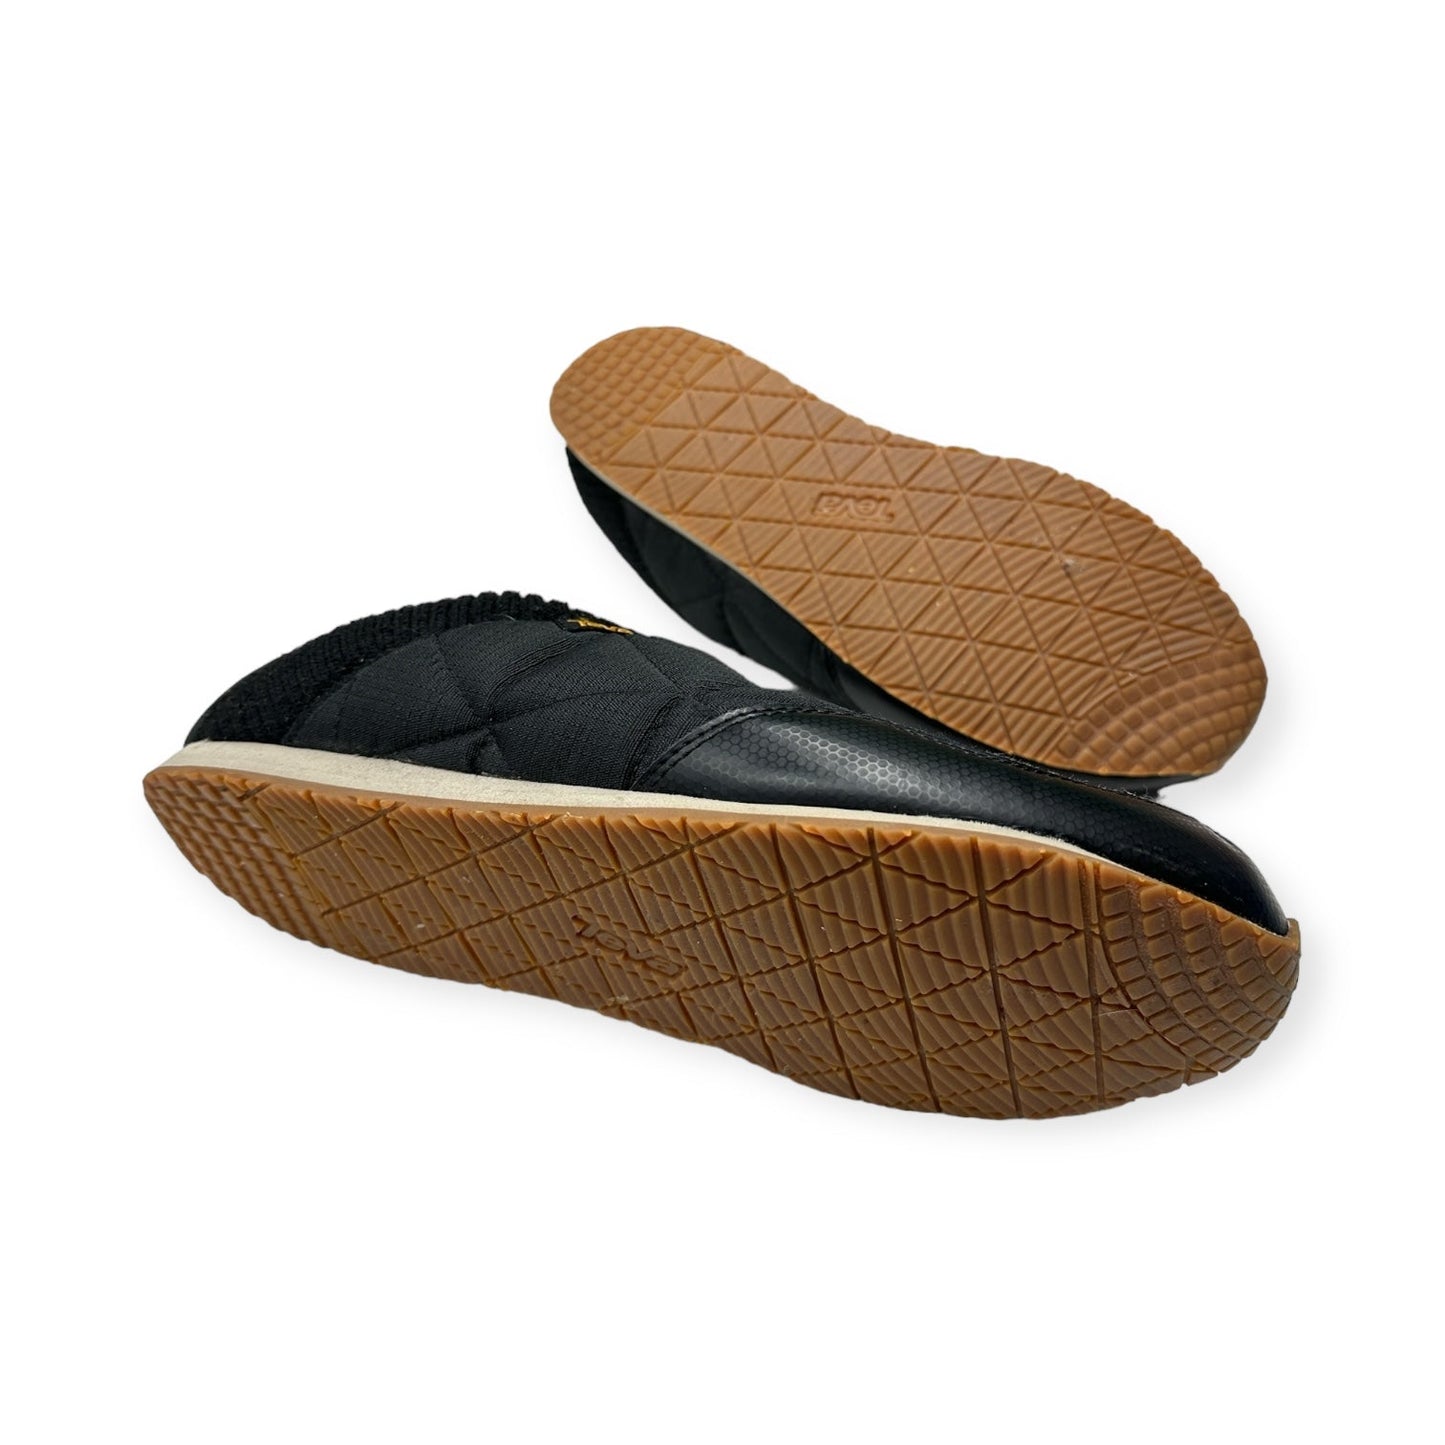 Black Shoes Flats Teva, Size 11